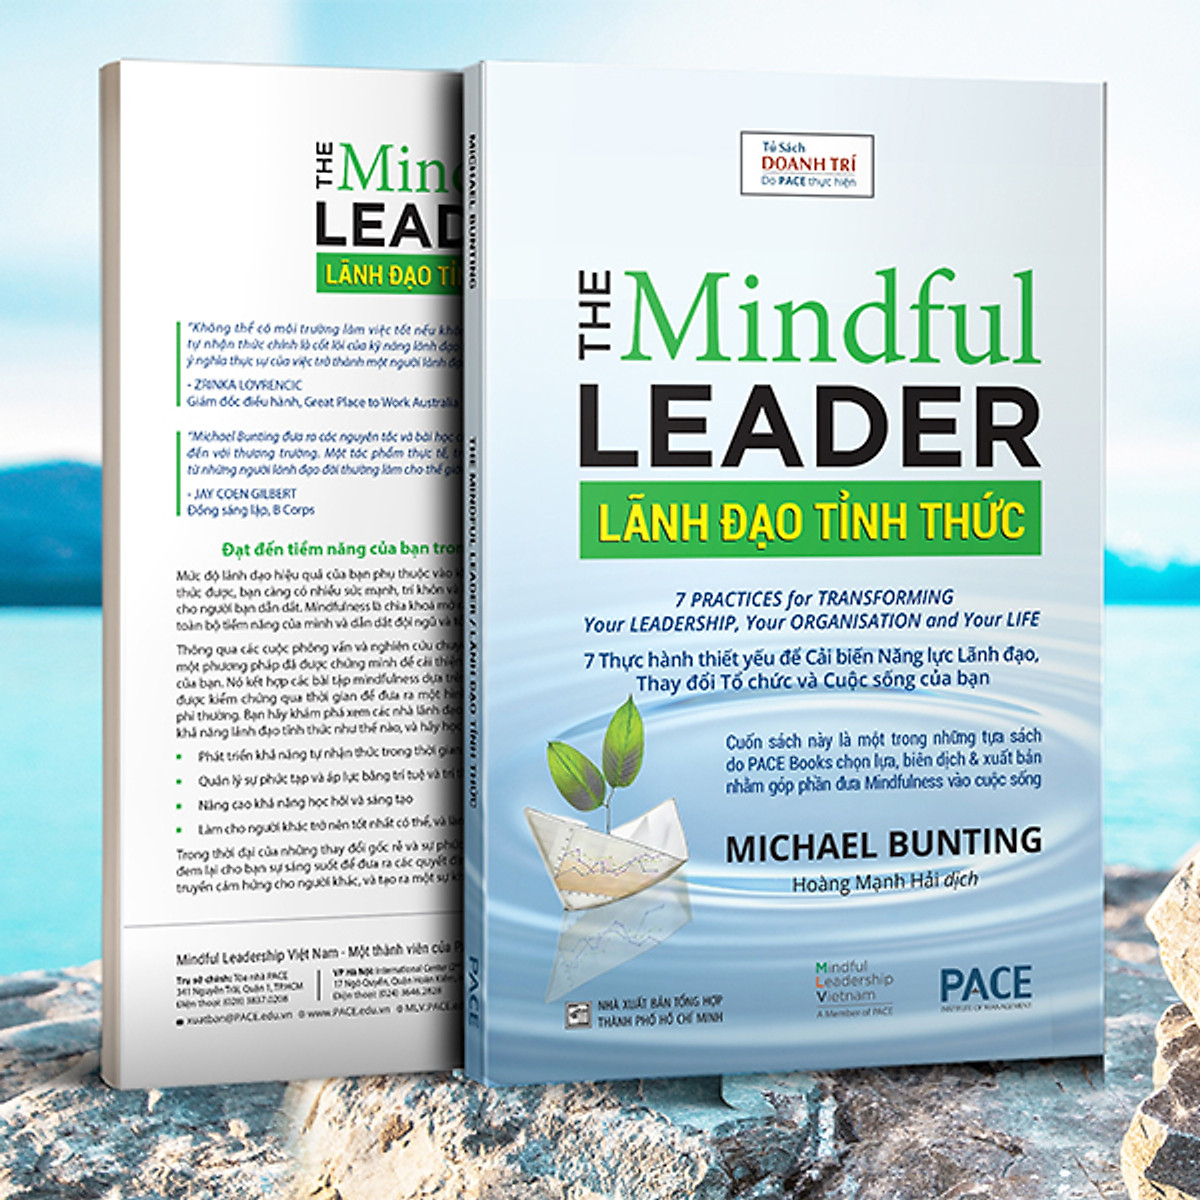 Lãnh Đạo Tỉnh Thức (The Mindful Leader) - Michael Bunting - PACE Books